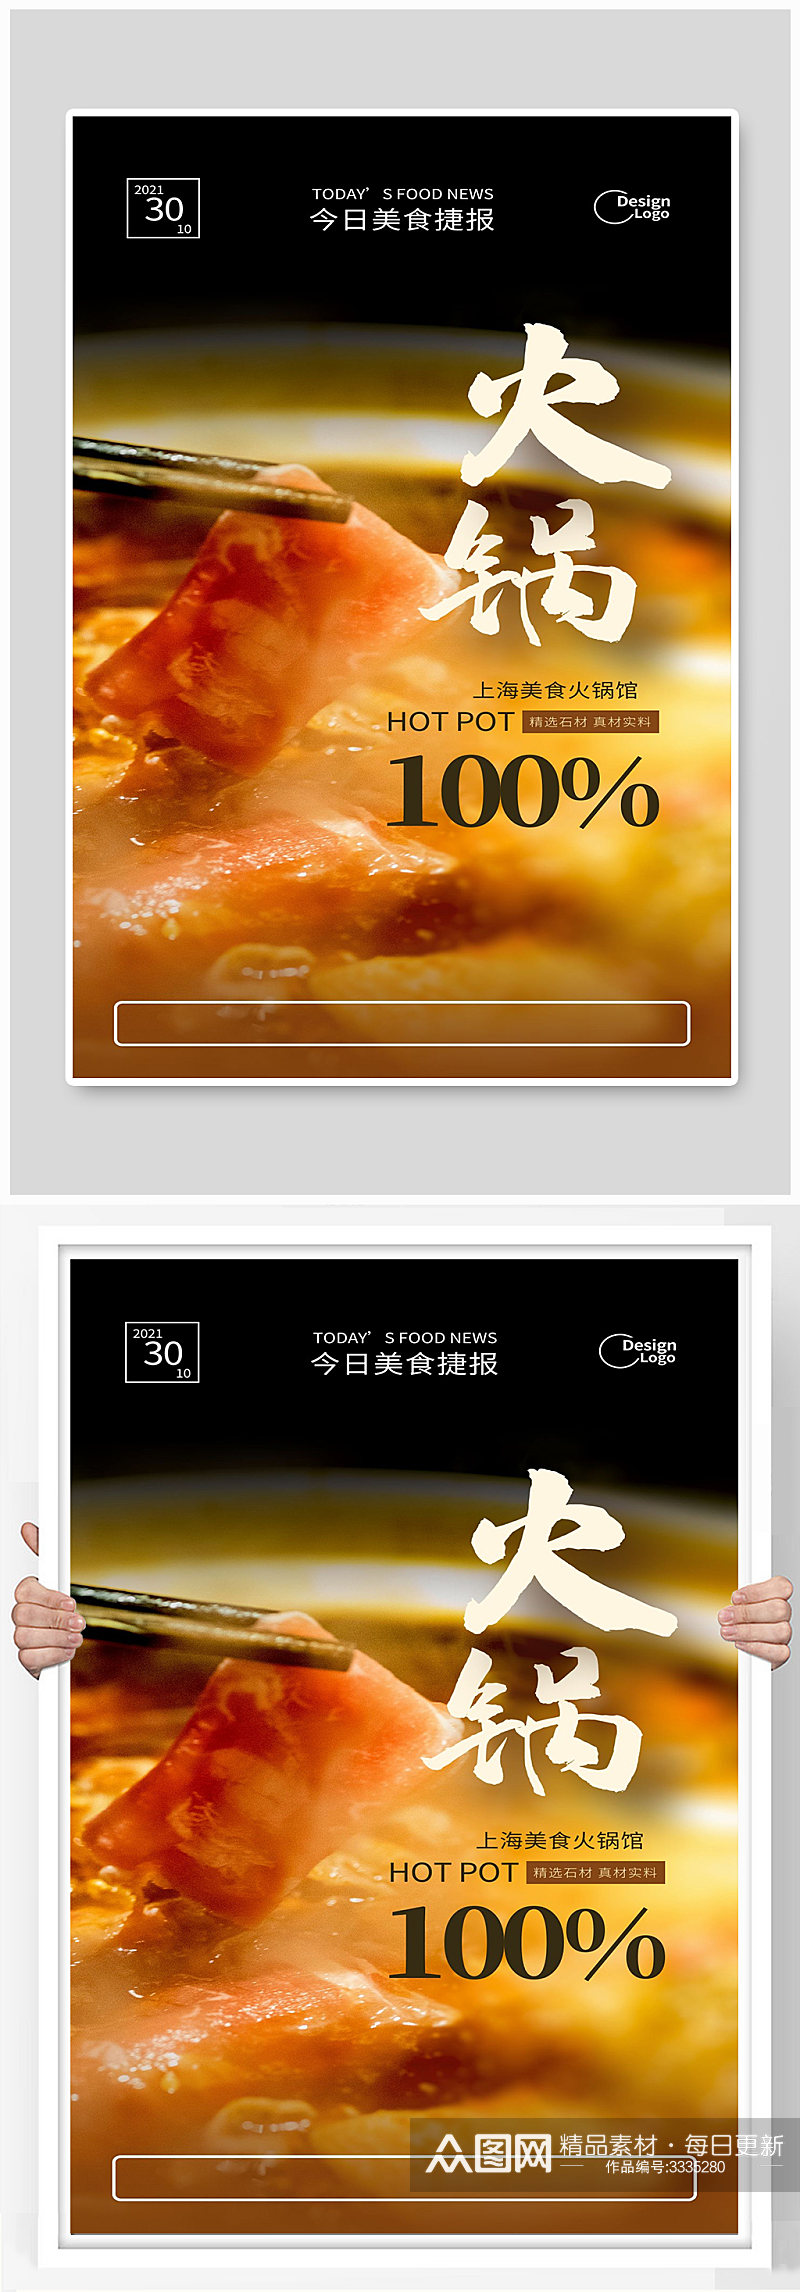 上海美食火锅馆宣传海报素材